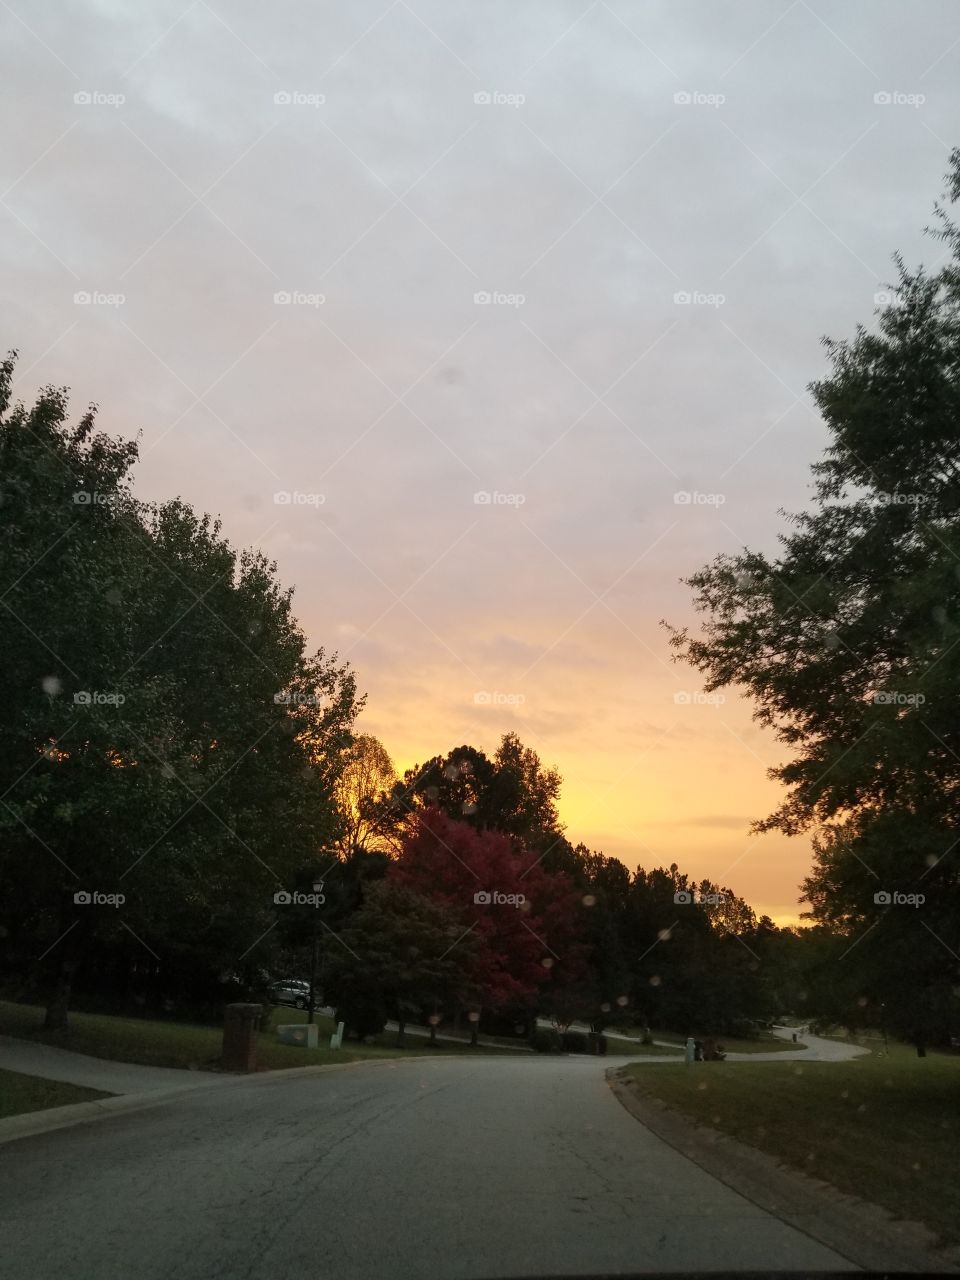 sunrise